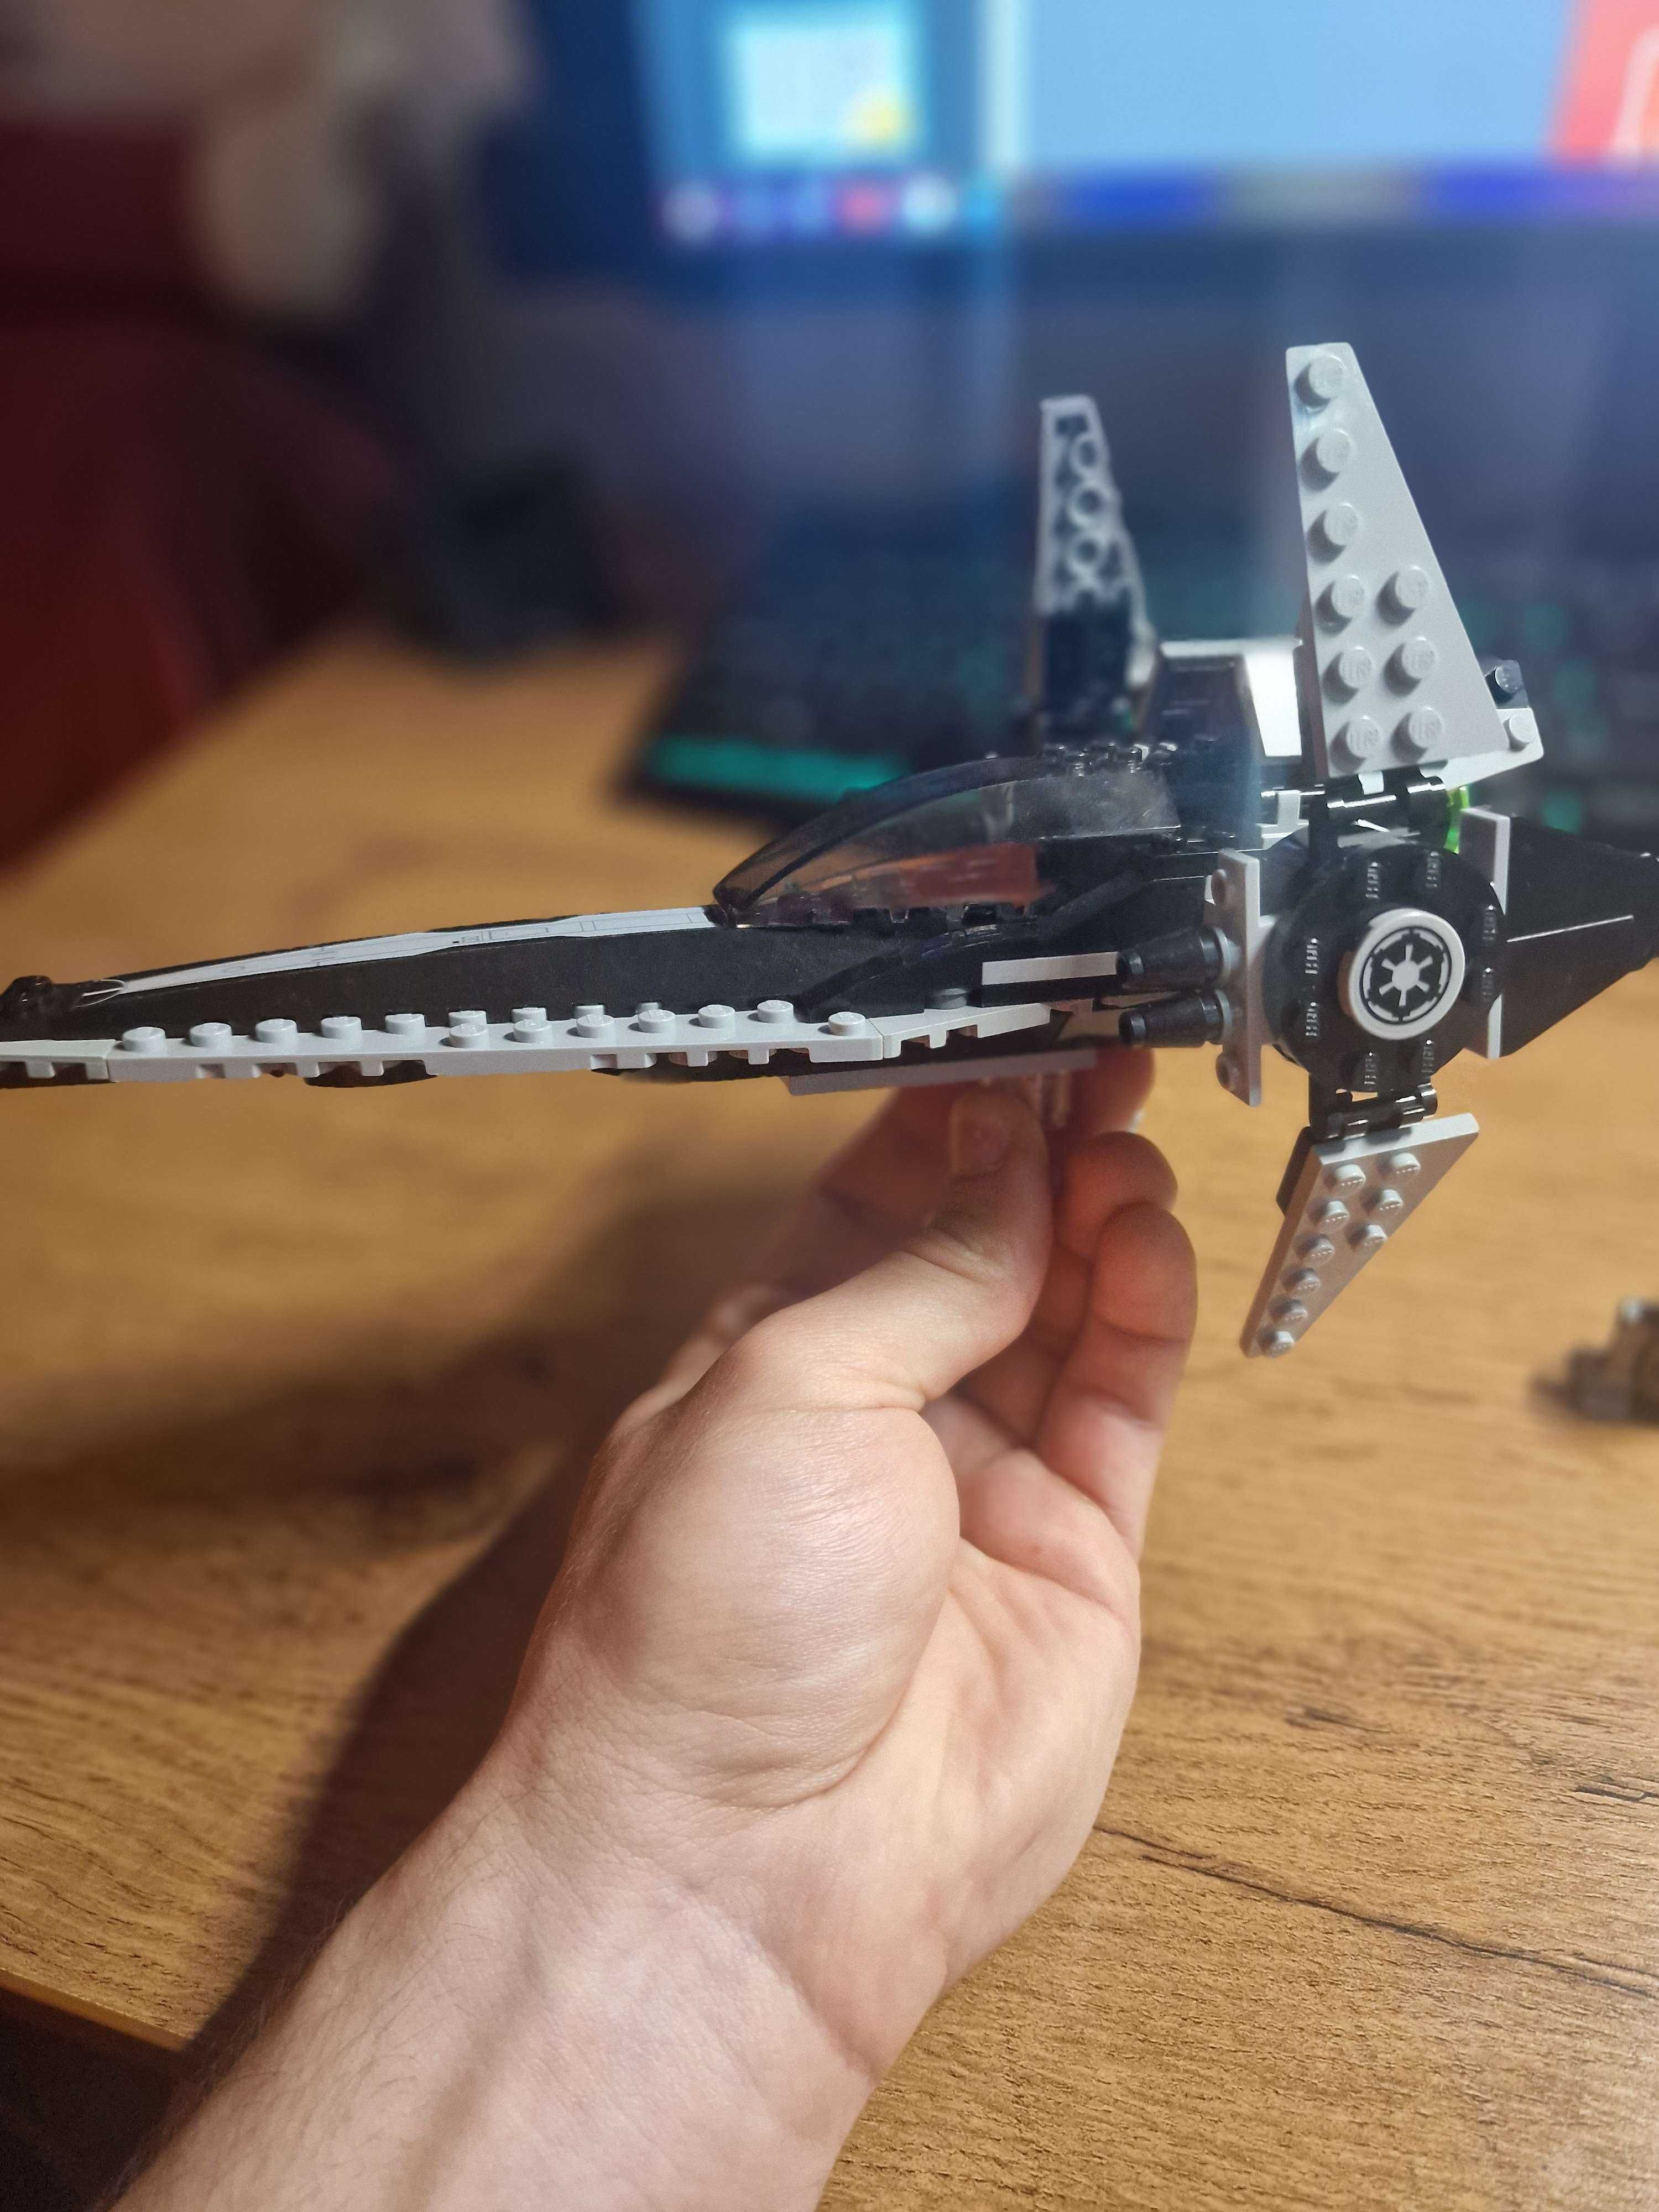 Lego Star Wars 7915 Imperial V-wing Starfighter